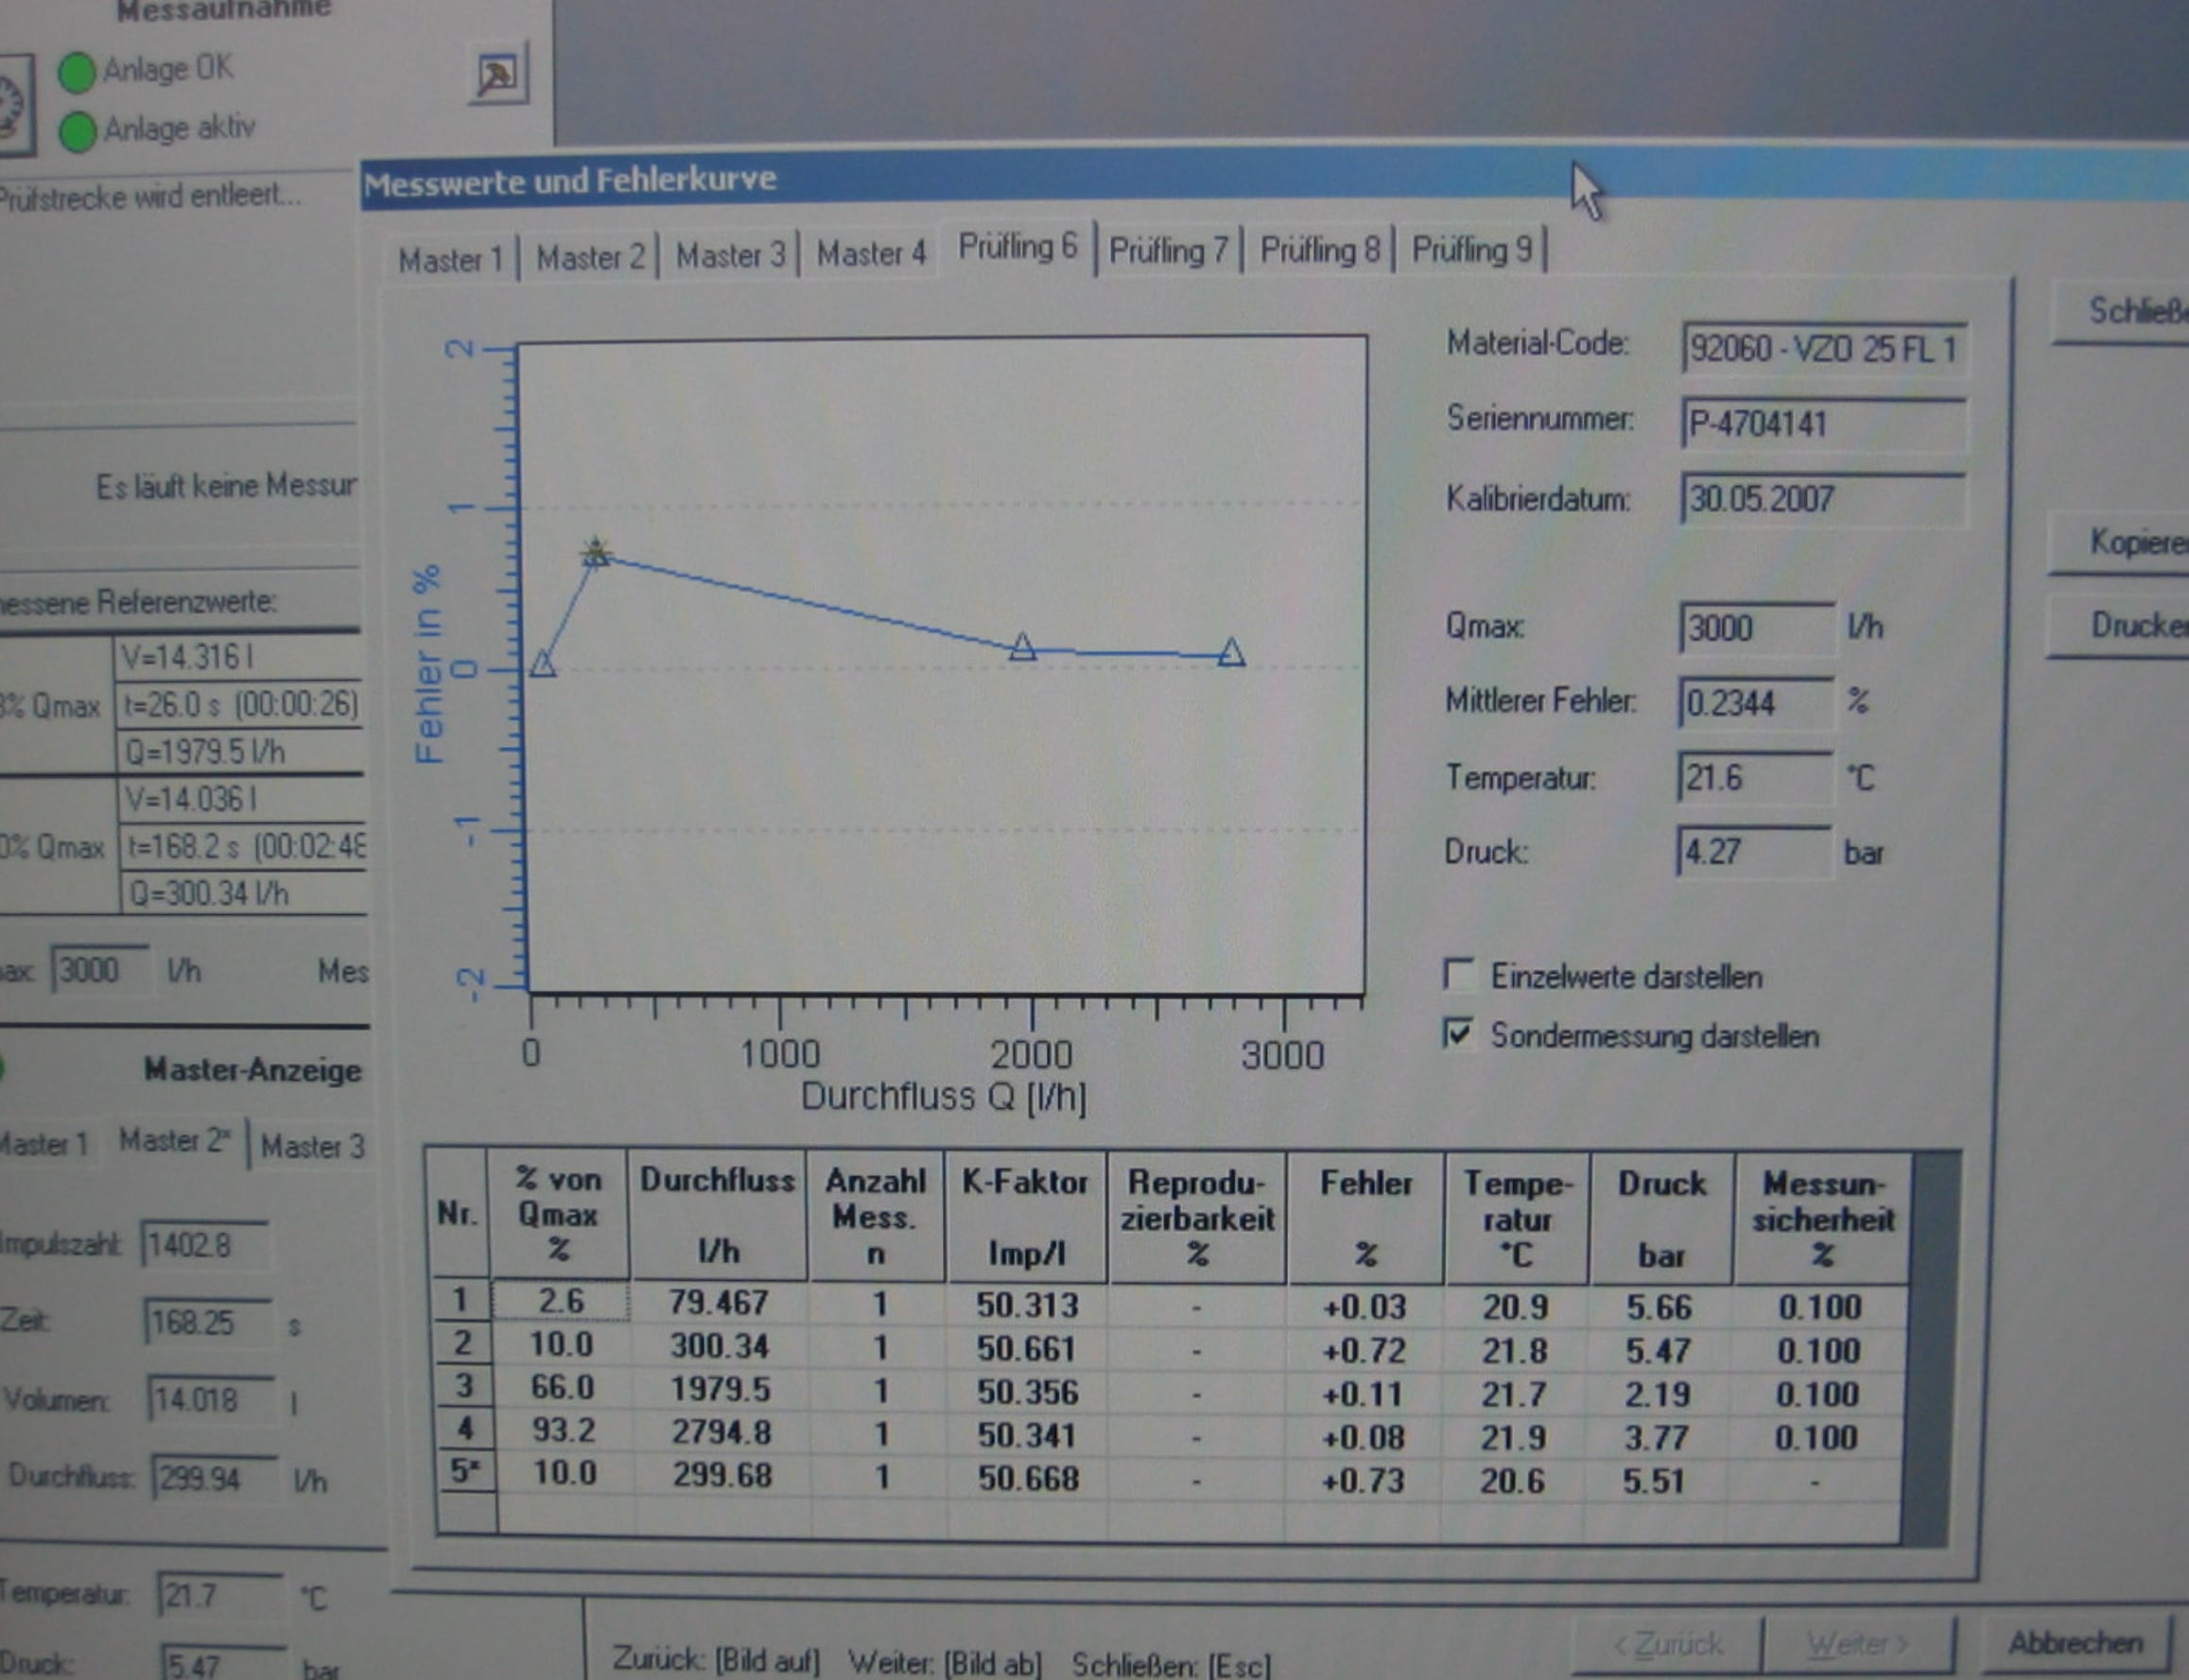 Погрешность измерений  топливных  счетчиков, ошибка в % и графическое изображение